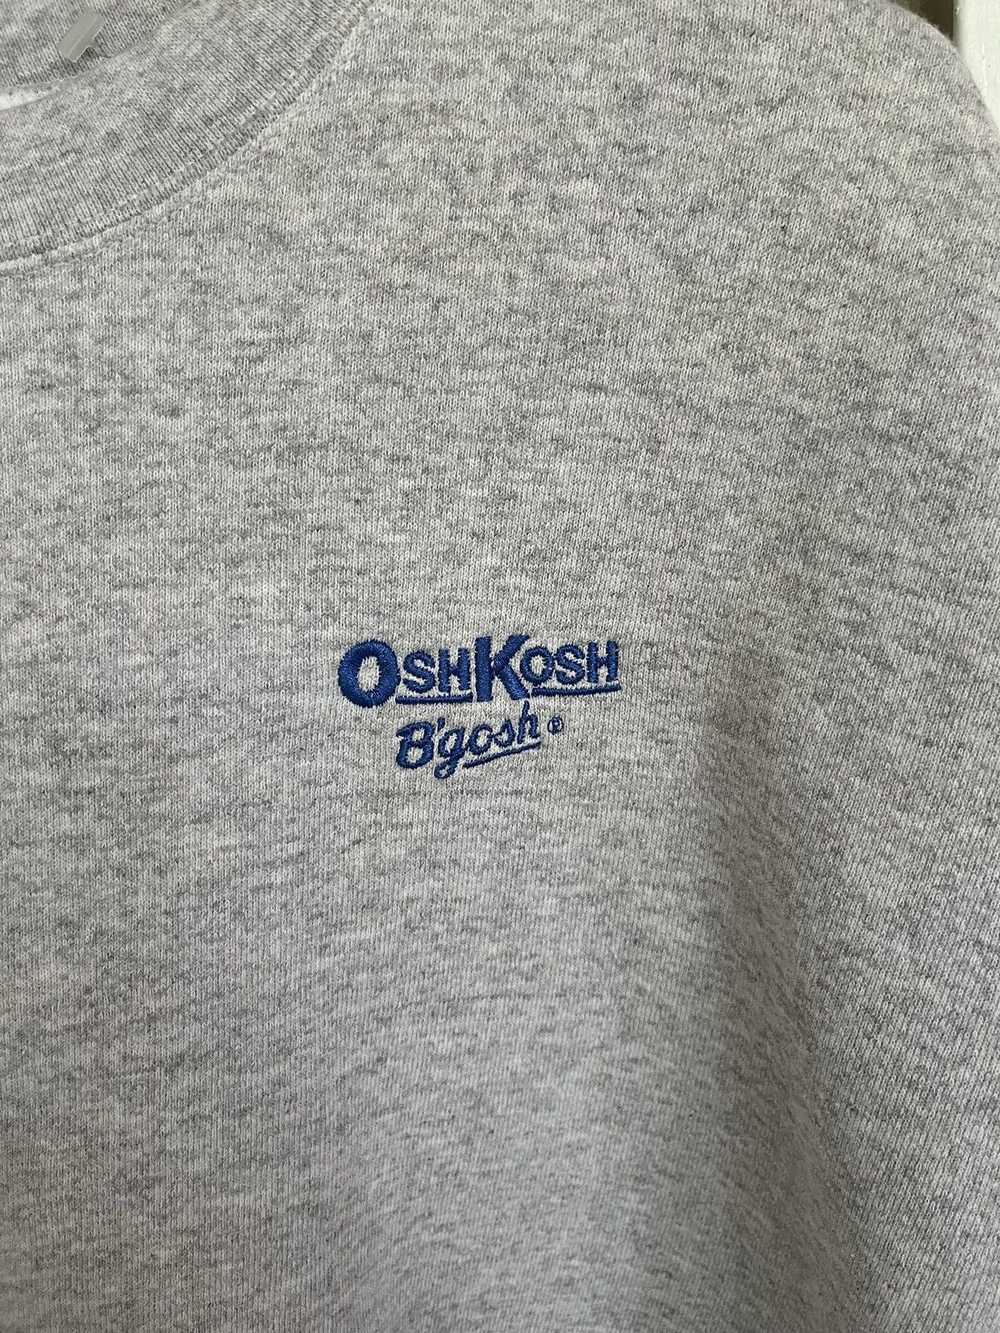 Oshkosh × Streetwear × Vintage VINTAGE OSHKOSH BG… - image 2